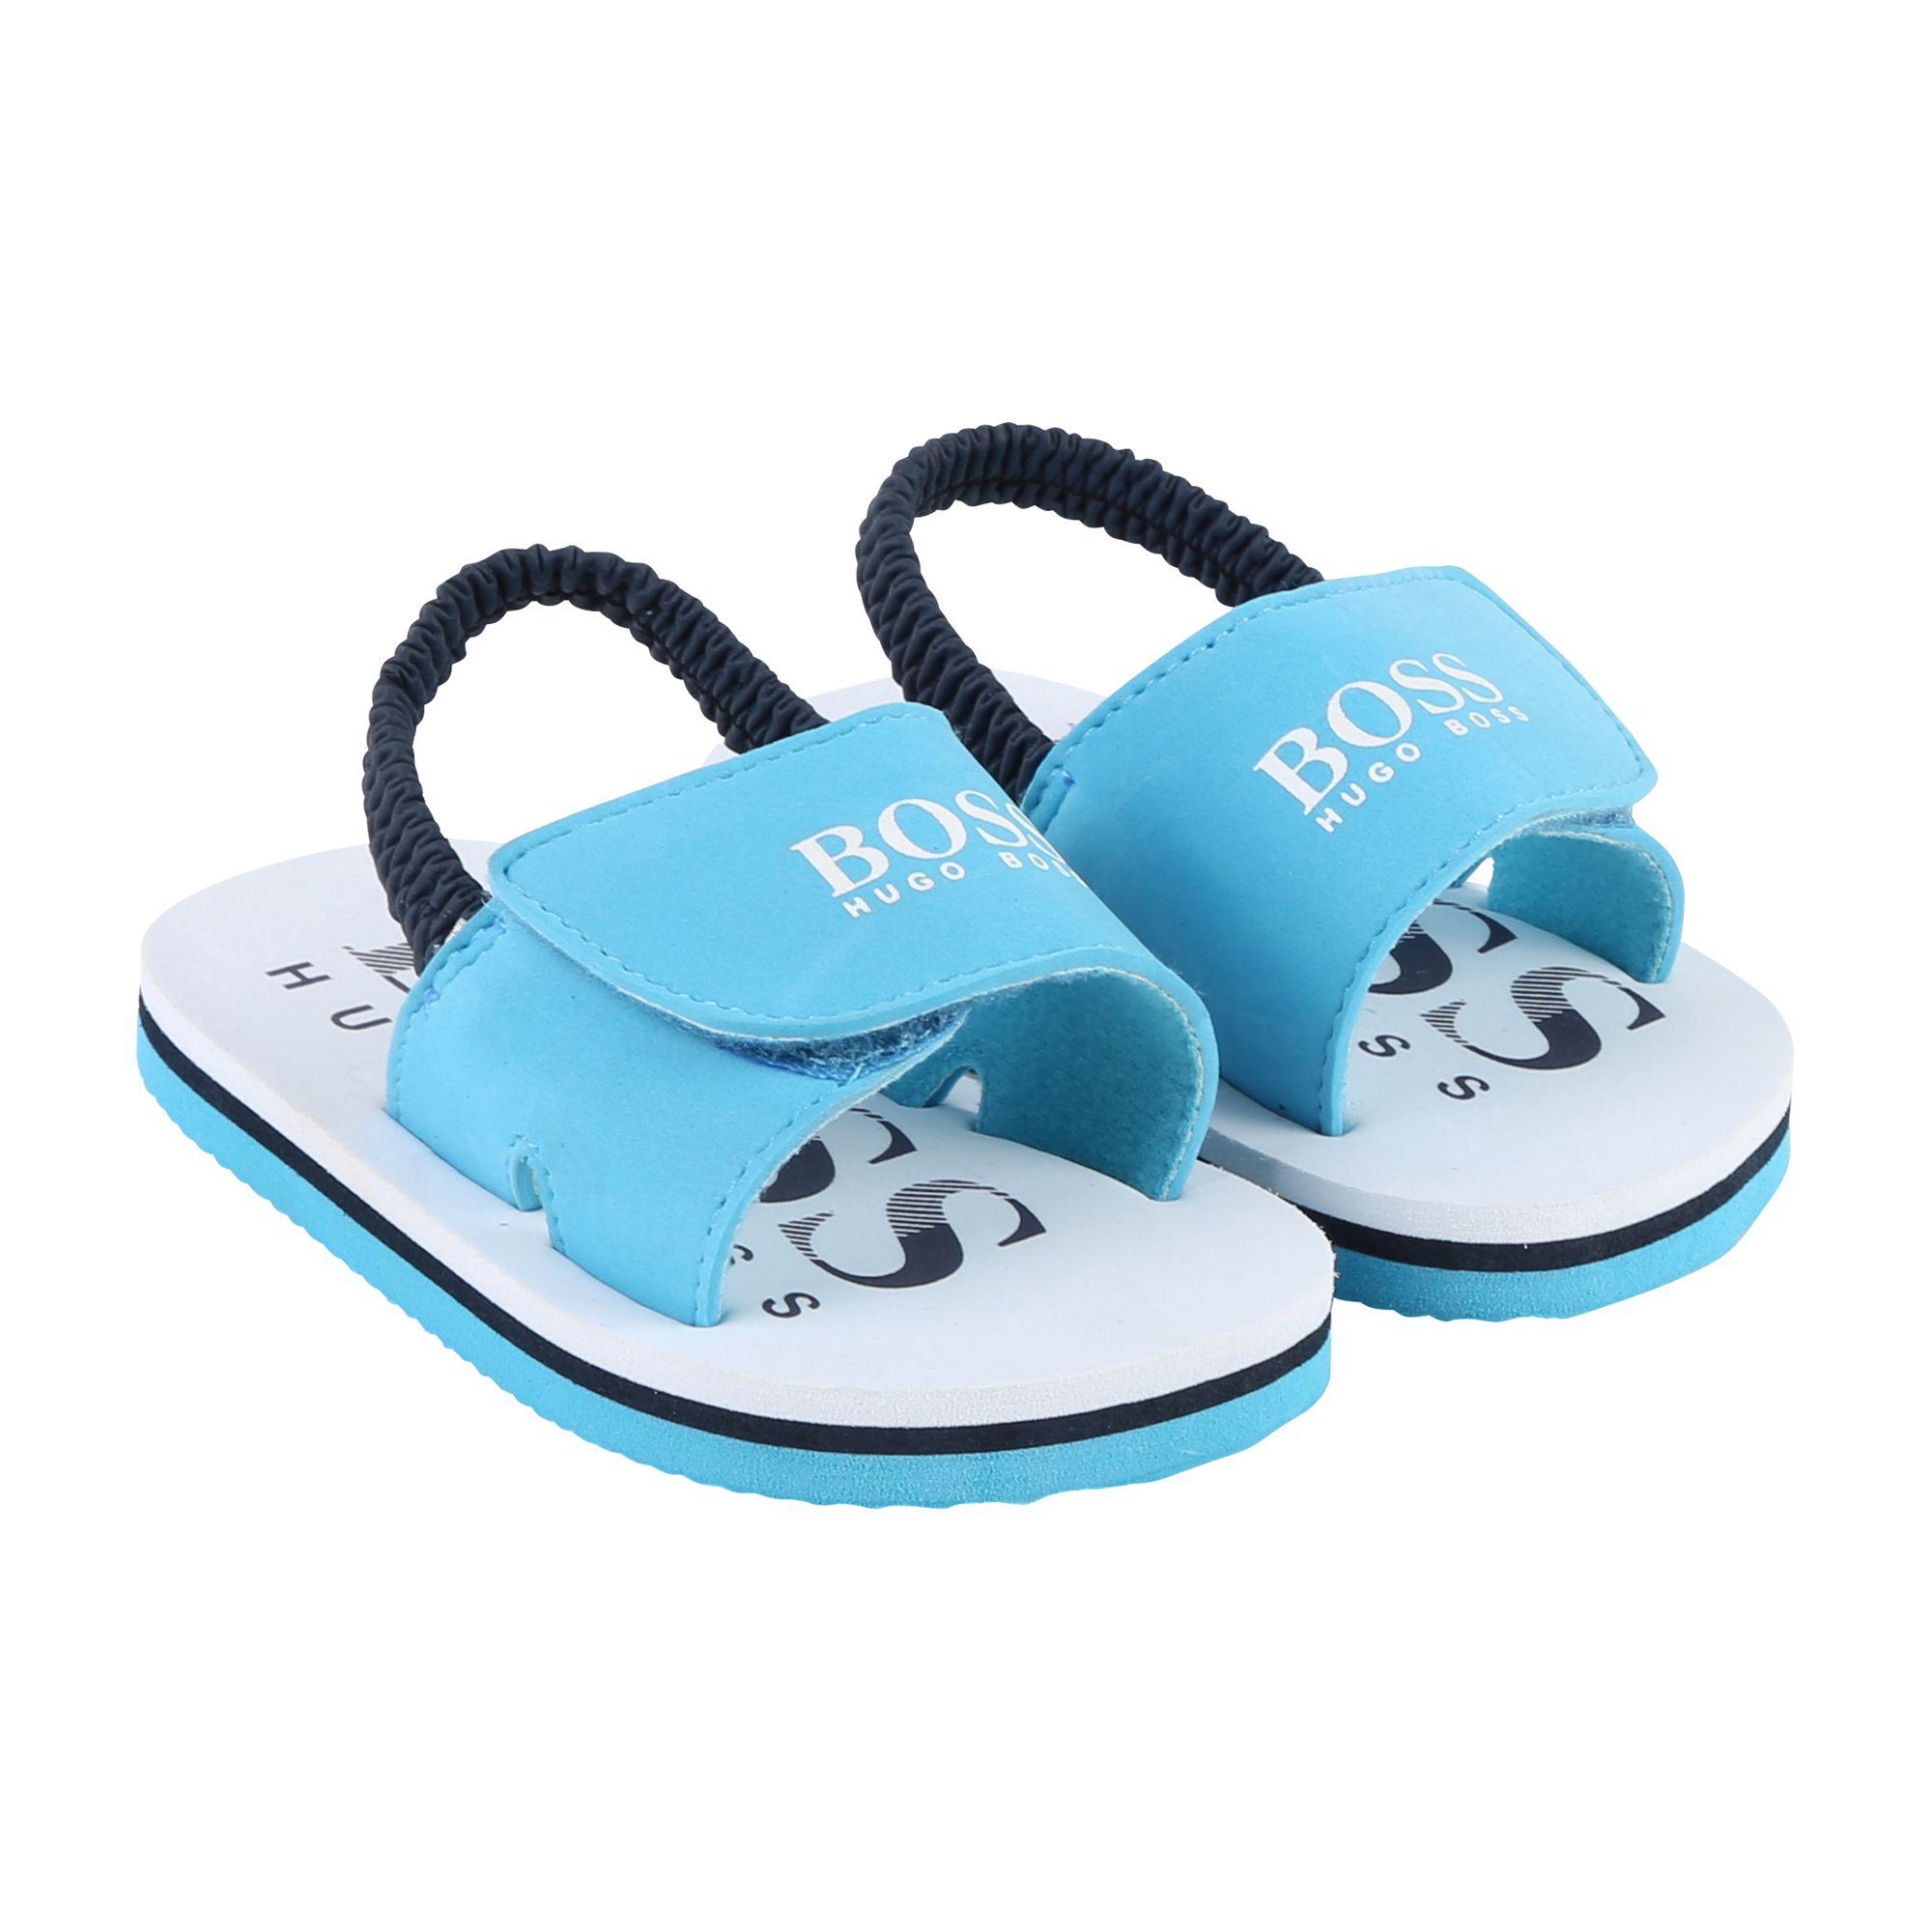 hugo boss infant sandals